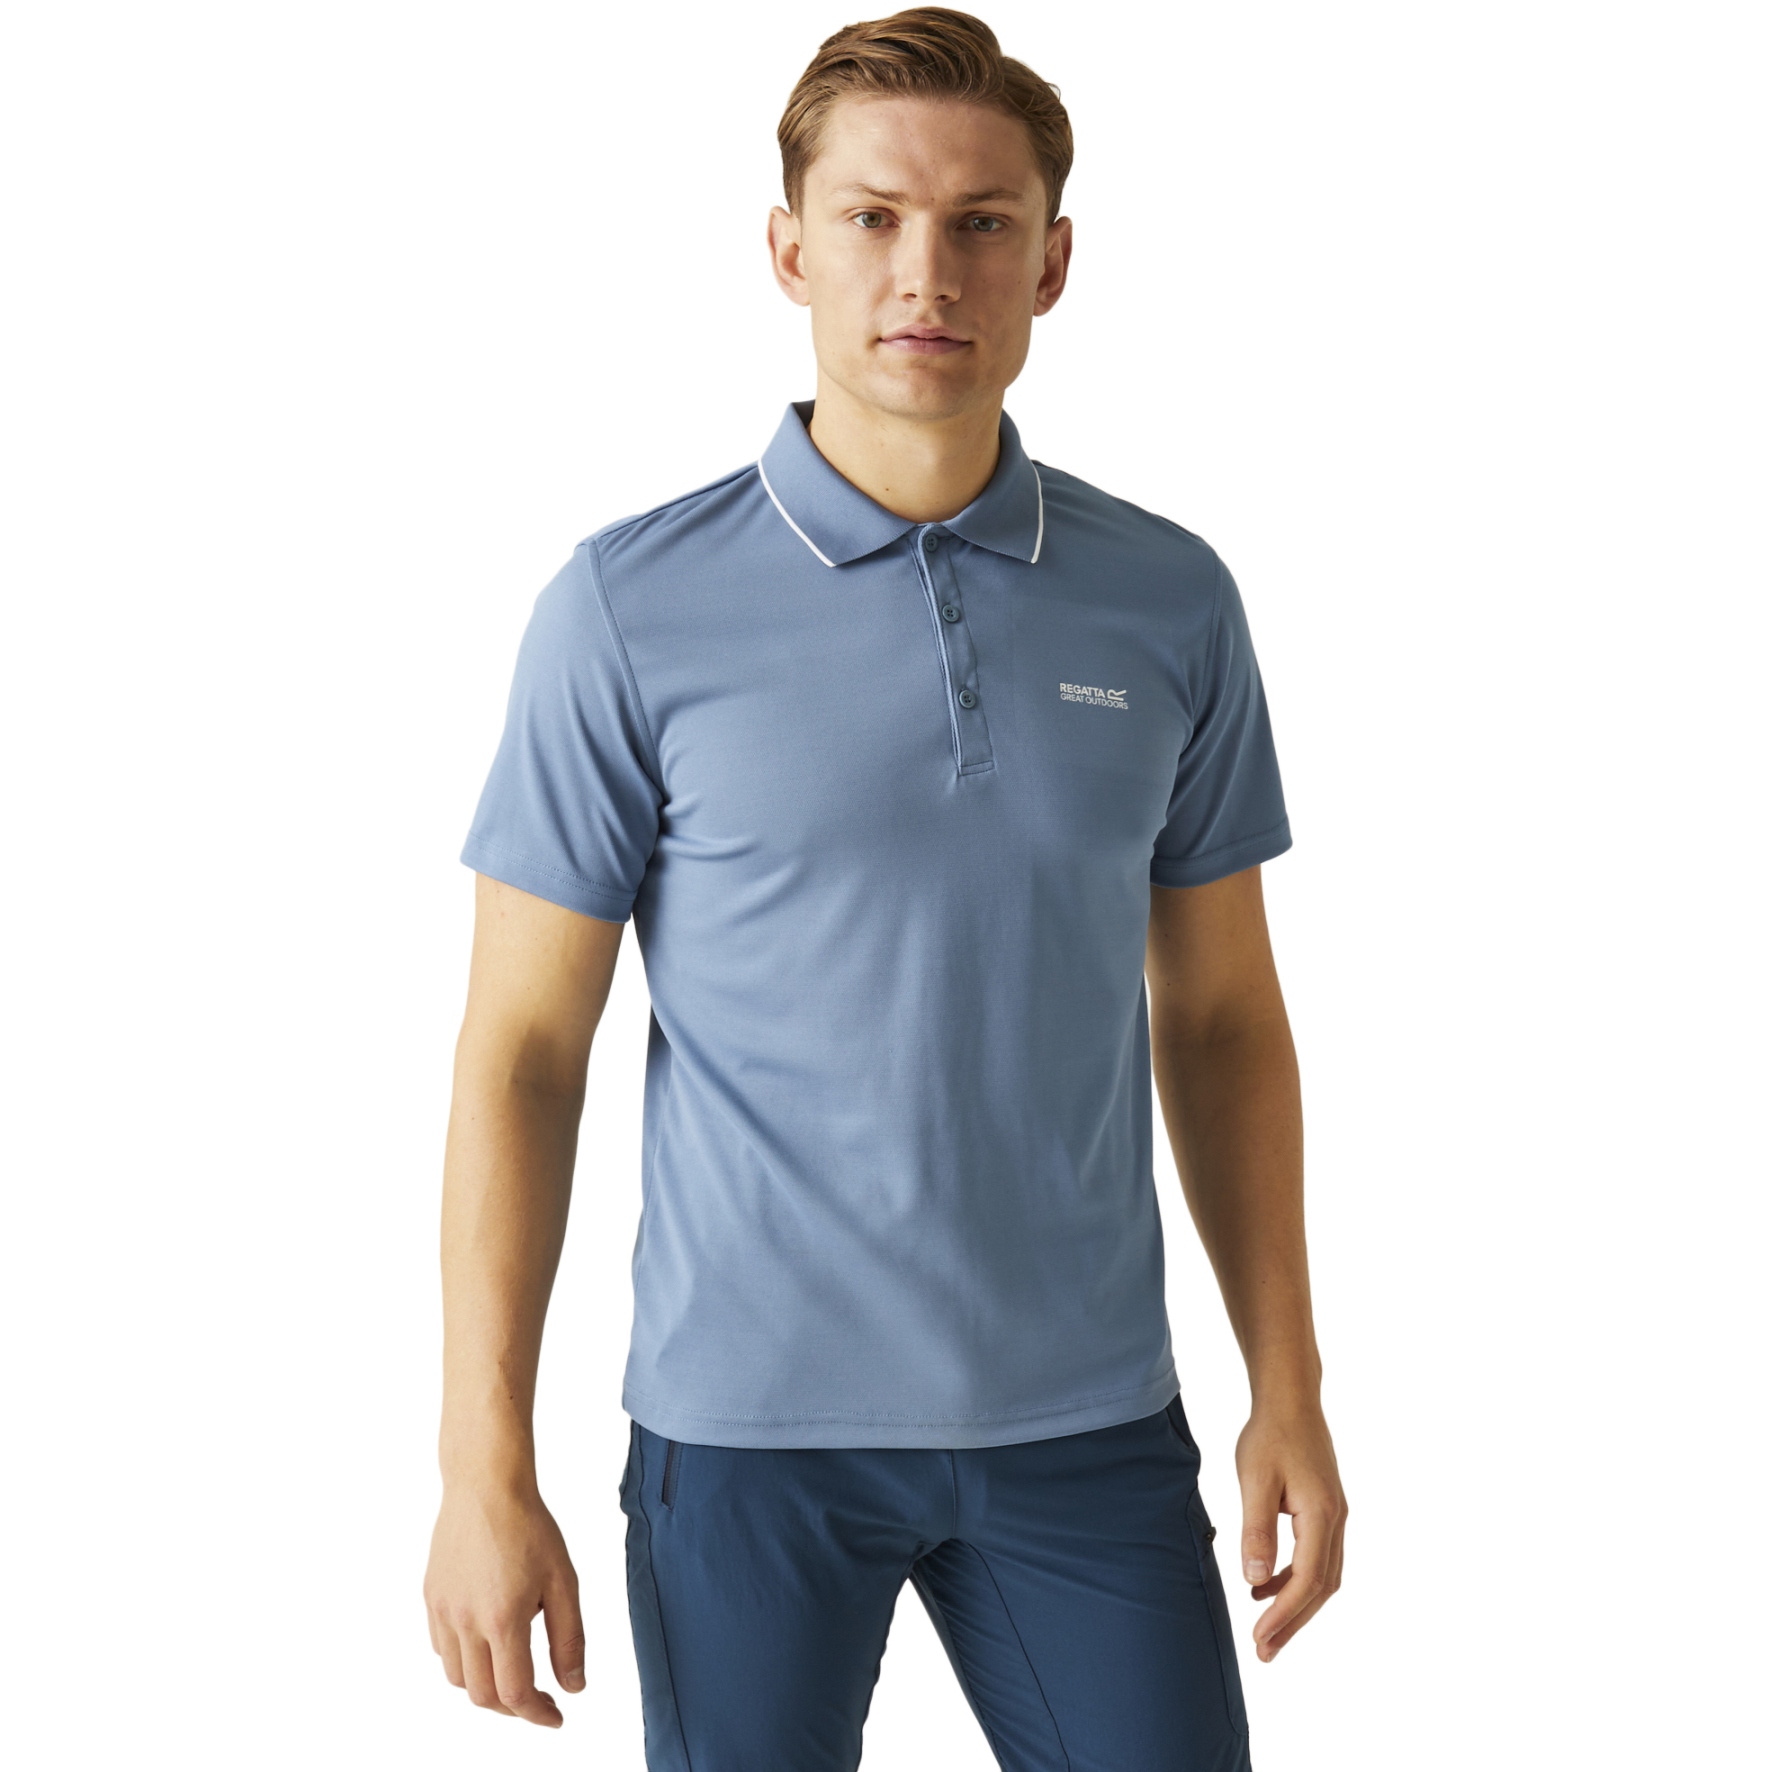 Produktbild von Regatta Maverik V Polo-Shirt Herren - Coronet Blue Z61